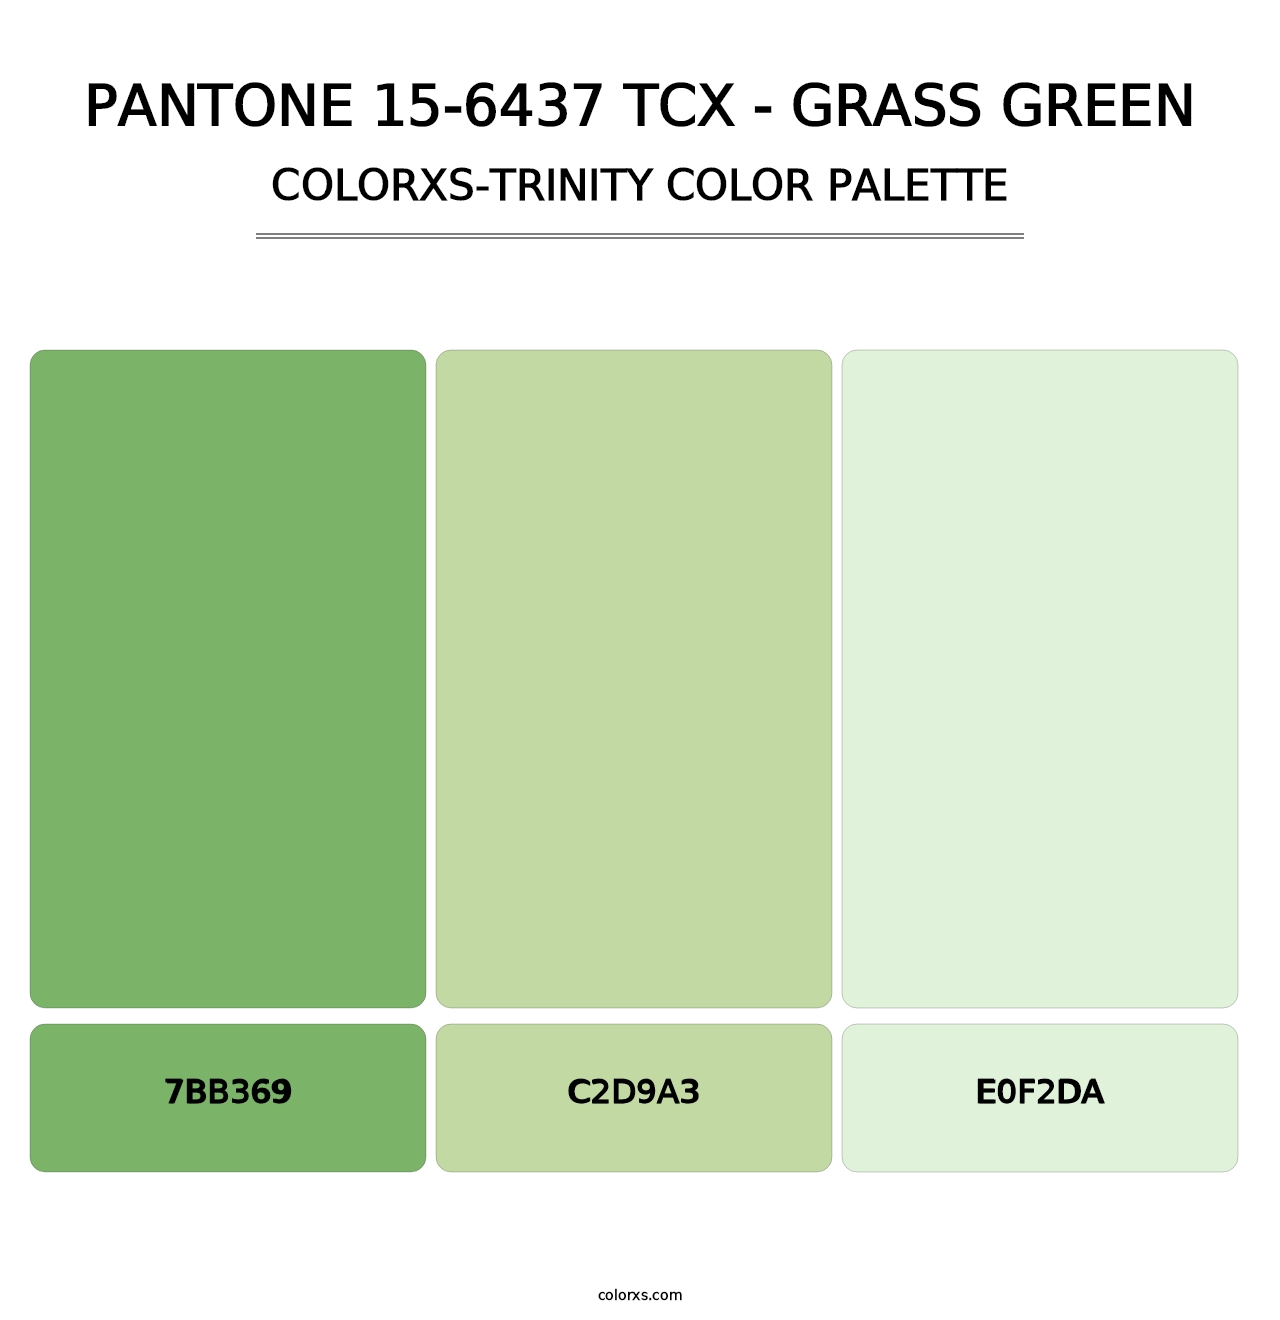 PANTONE 15-6437 TCX - Grass Green - Colorxs Trinity Palette